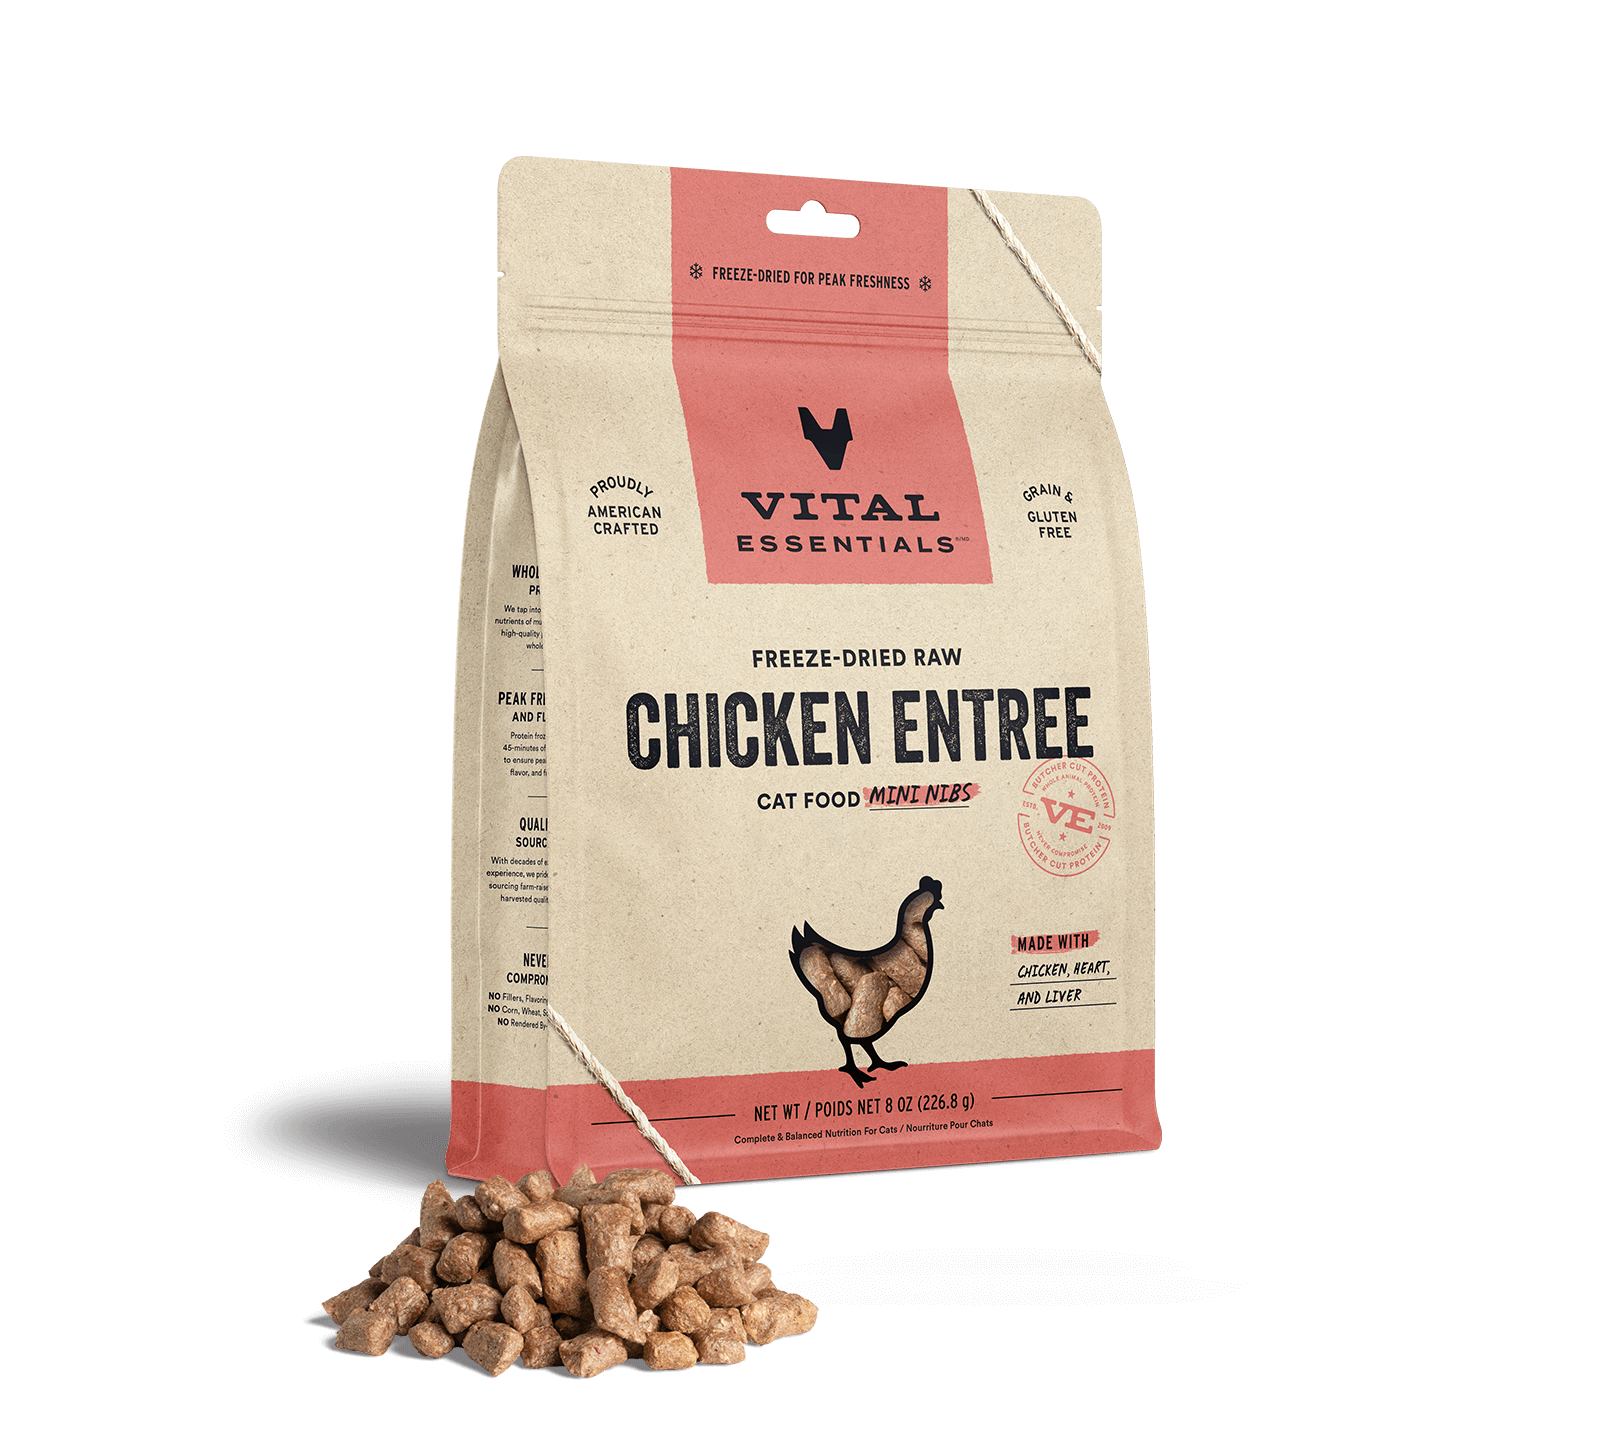 Vital Essentials Freeze-Dried Raw Chicken Entree Cat Food Mini Nibs, 8 oz - Healing/First Aid